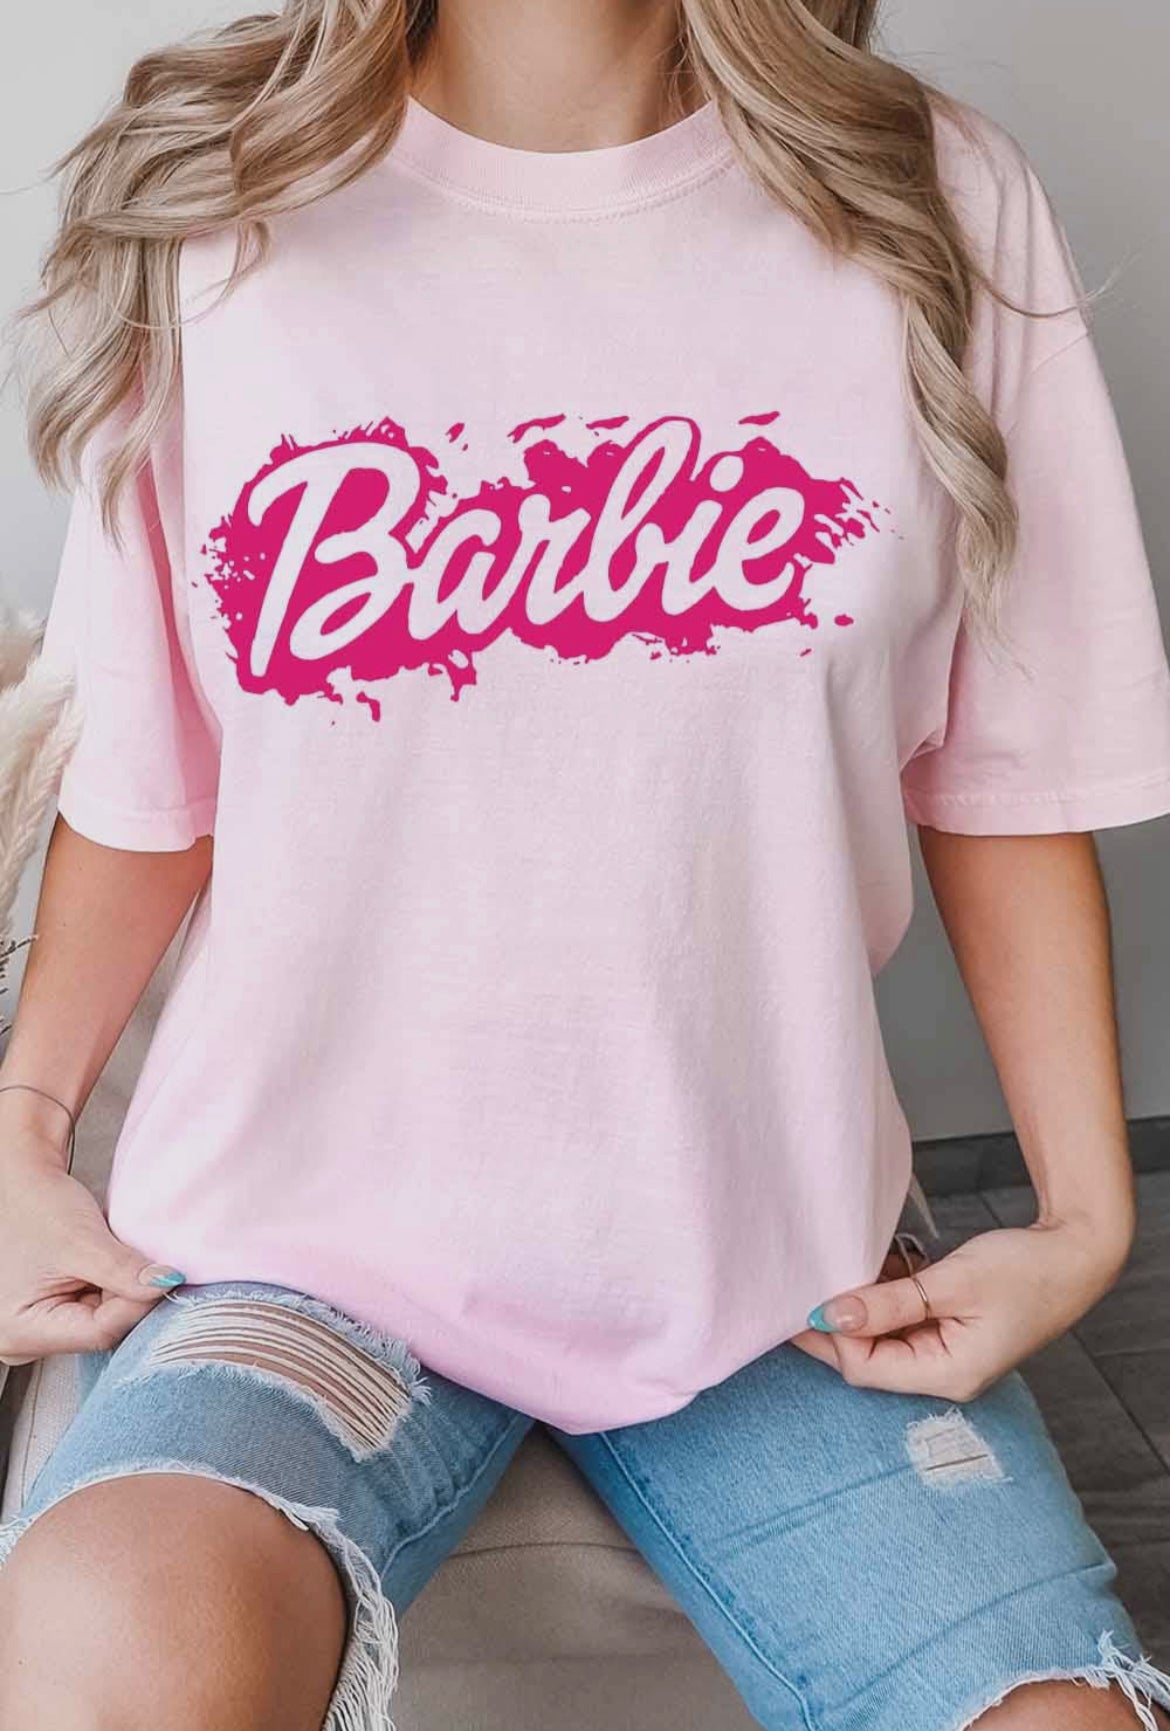 Barbie Light Pink Tee